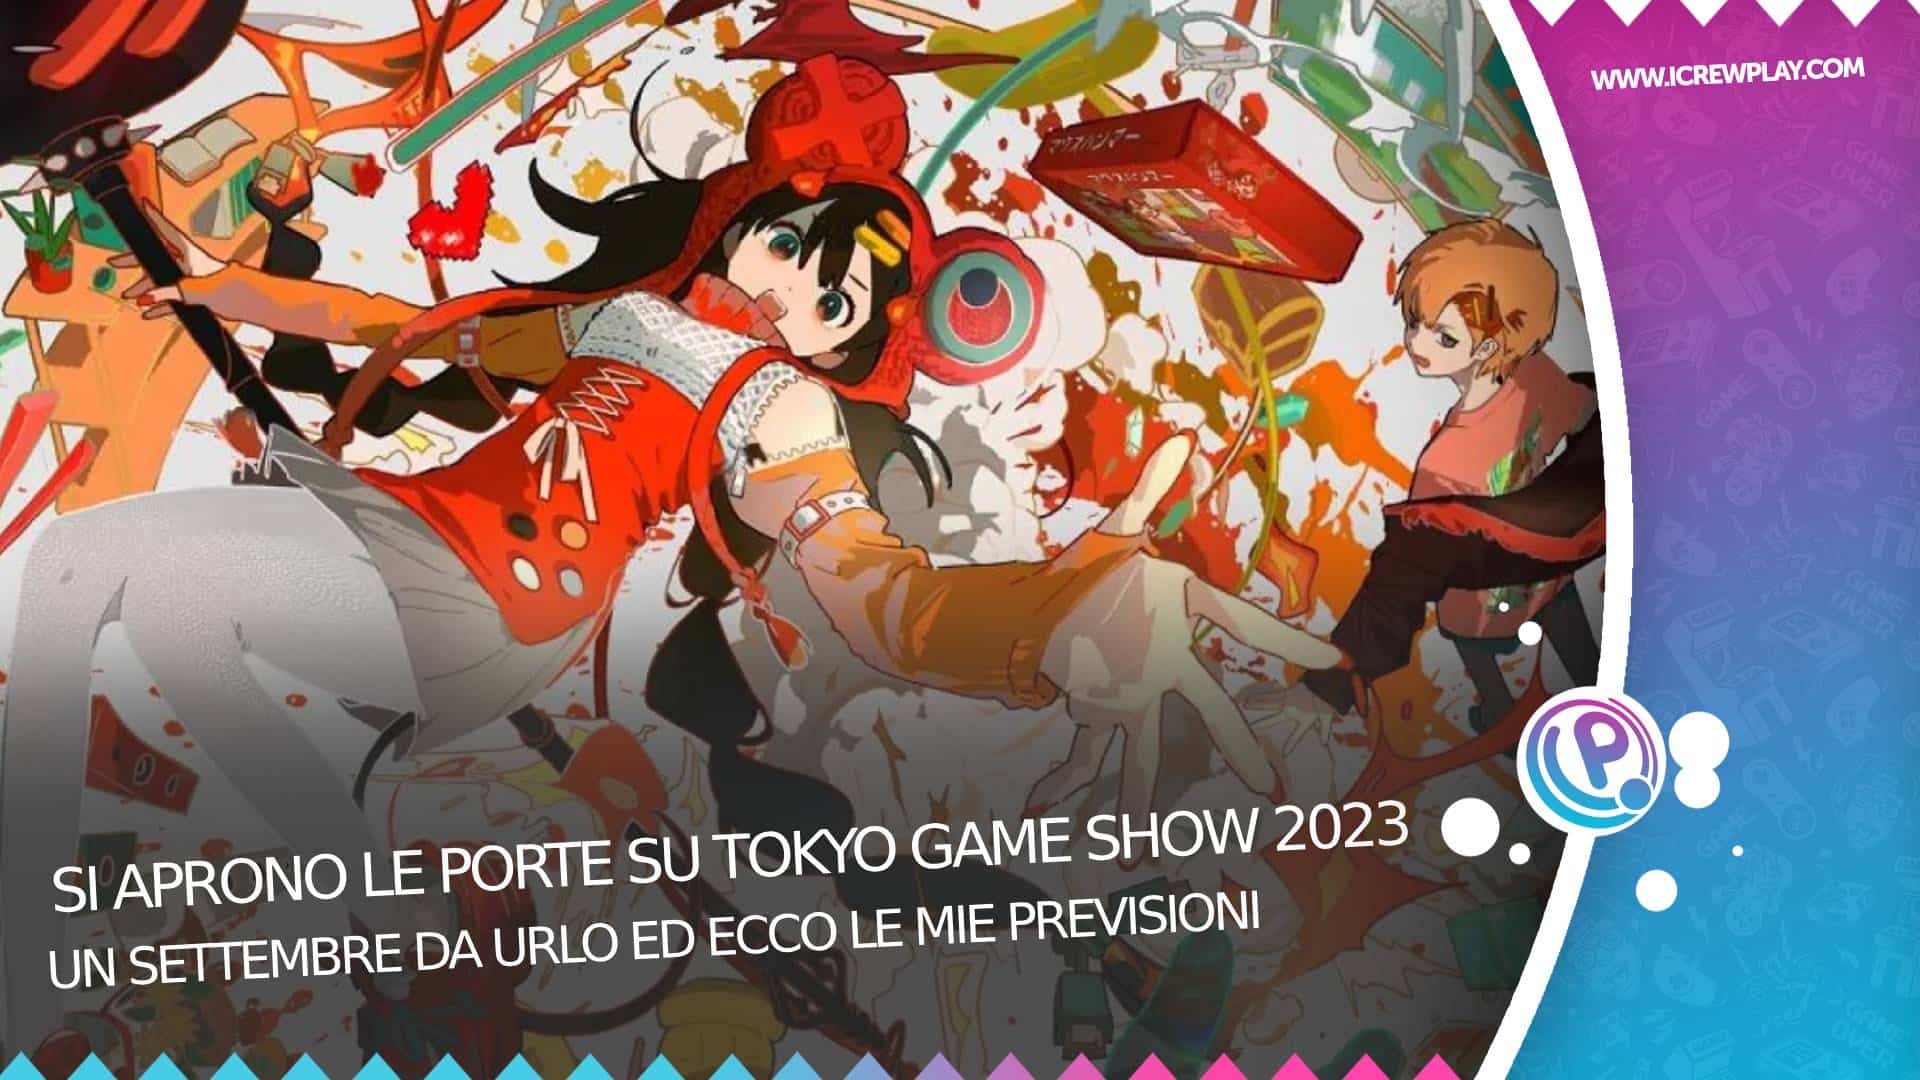 Si aprono le porte su Tokyo game show 2023 6